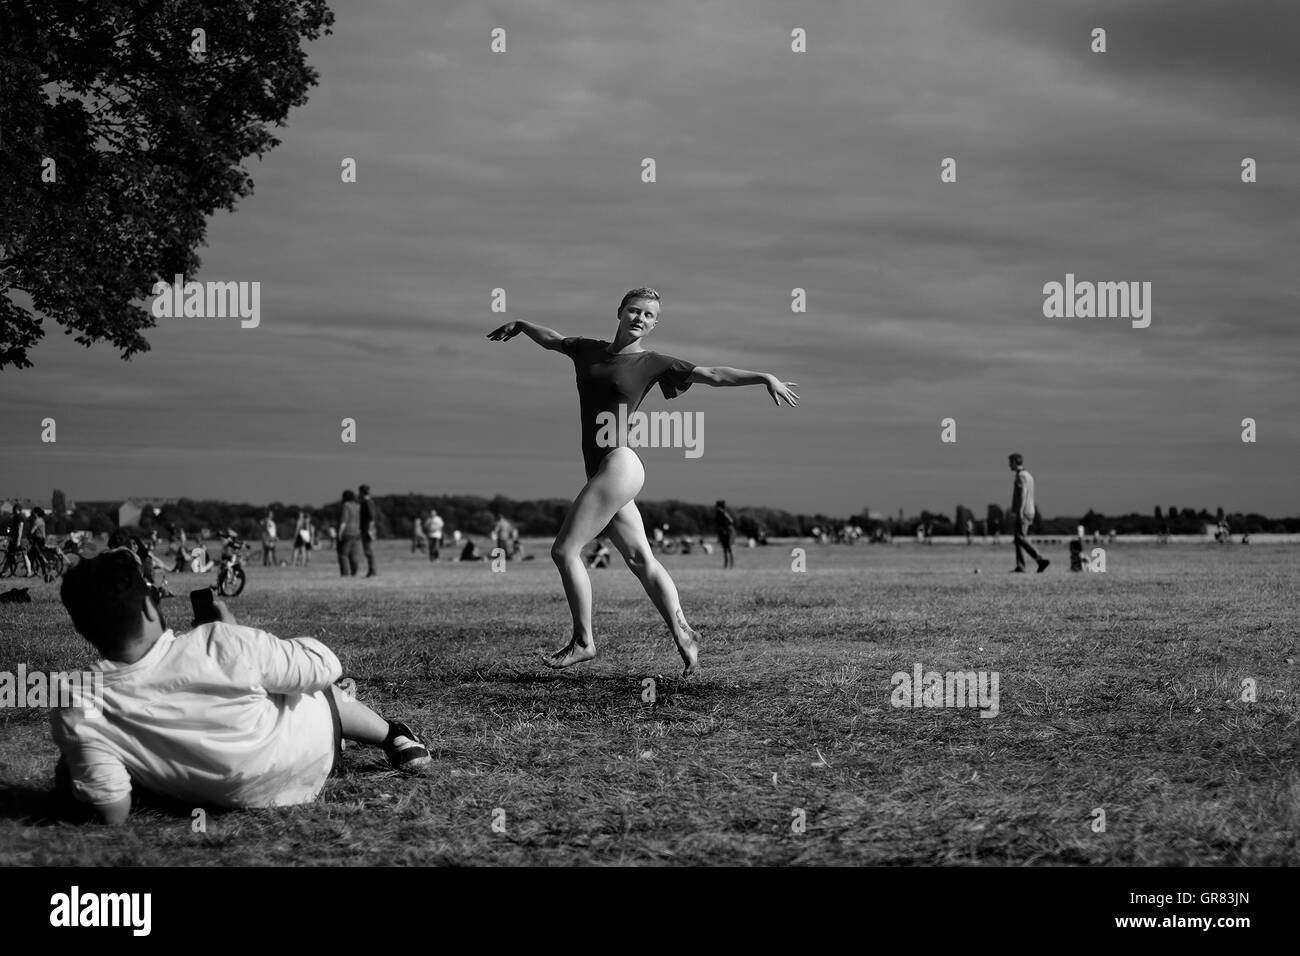 Danseur de Ballet à Berlin Tempelhof, danses pour les amis Banque D'Images